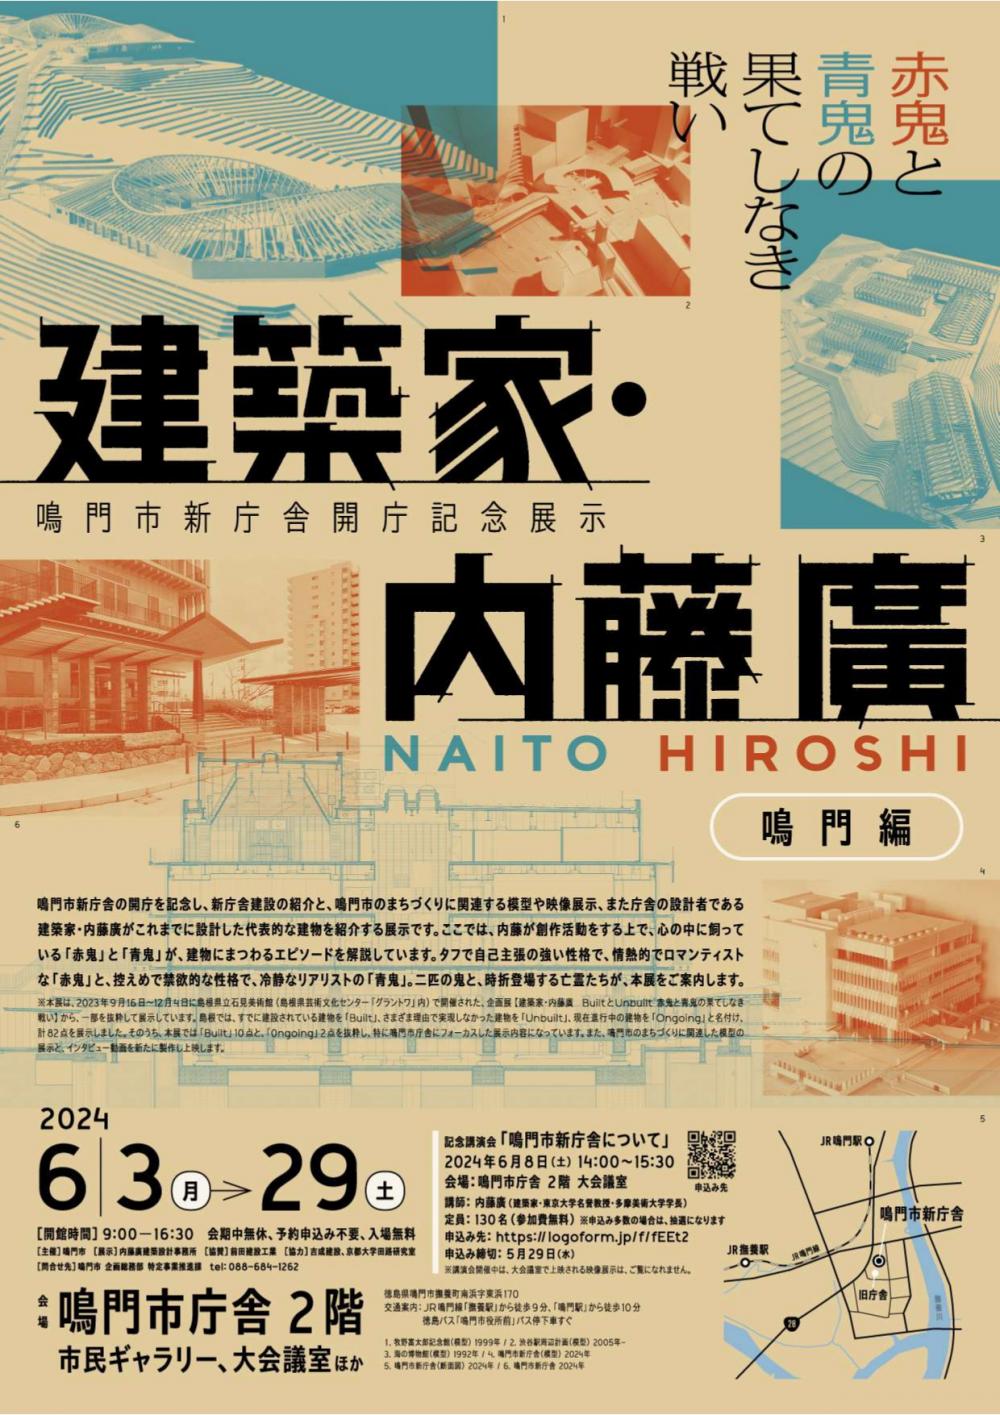 【6/3-29】鳴門市新庁舎開庁記念展示を実施。6/8には記念講演会も（要申込）（2024年）